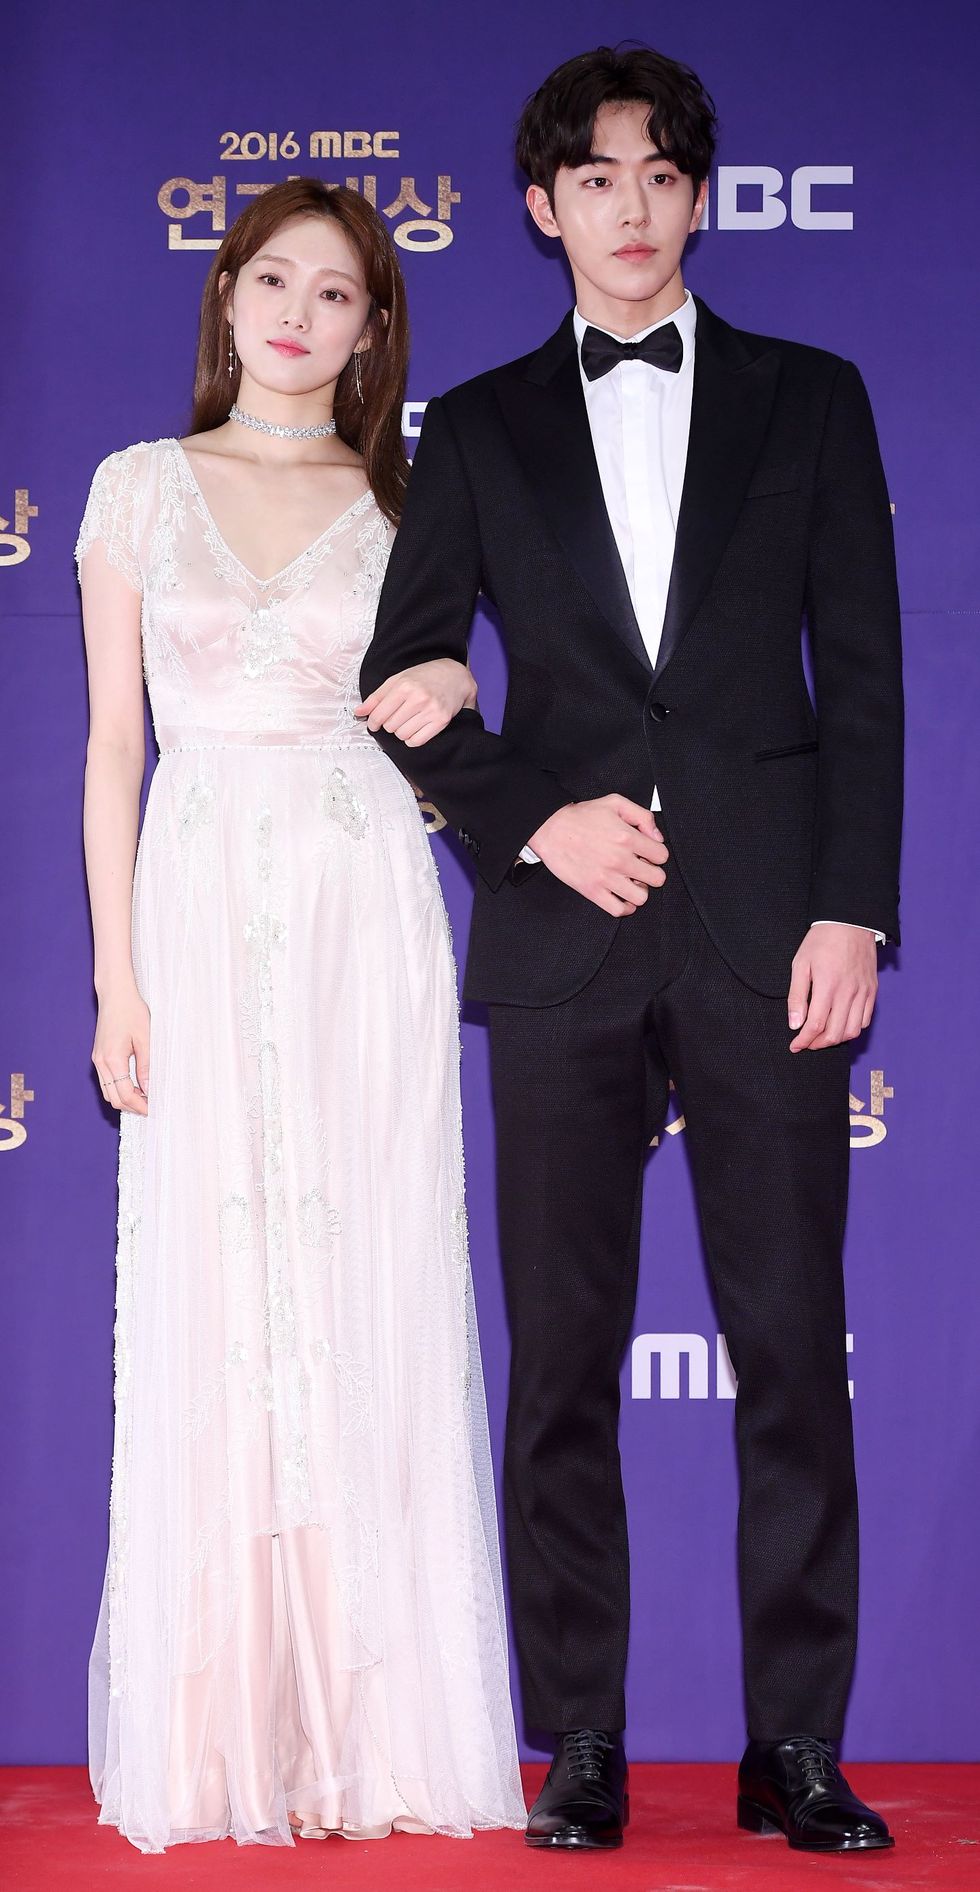 イ・ソンギョンlee sung kyoung and ナム・ジュヒョクnam joo hyuk, dec 30, 2016  lee sung kyoung, nam joo hyuk attends the "2016 mbc drama awards" at sangam mbc on december 30th in seoul, south korea photoosen